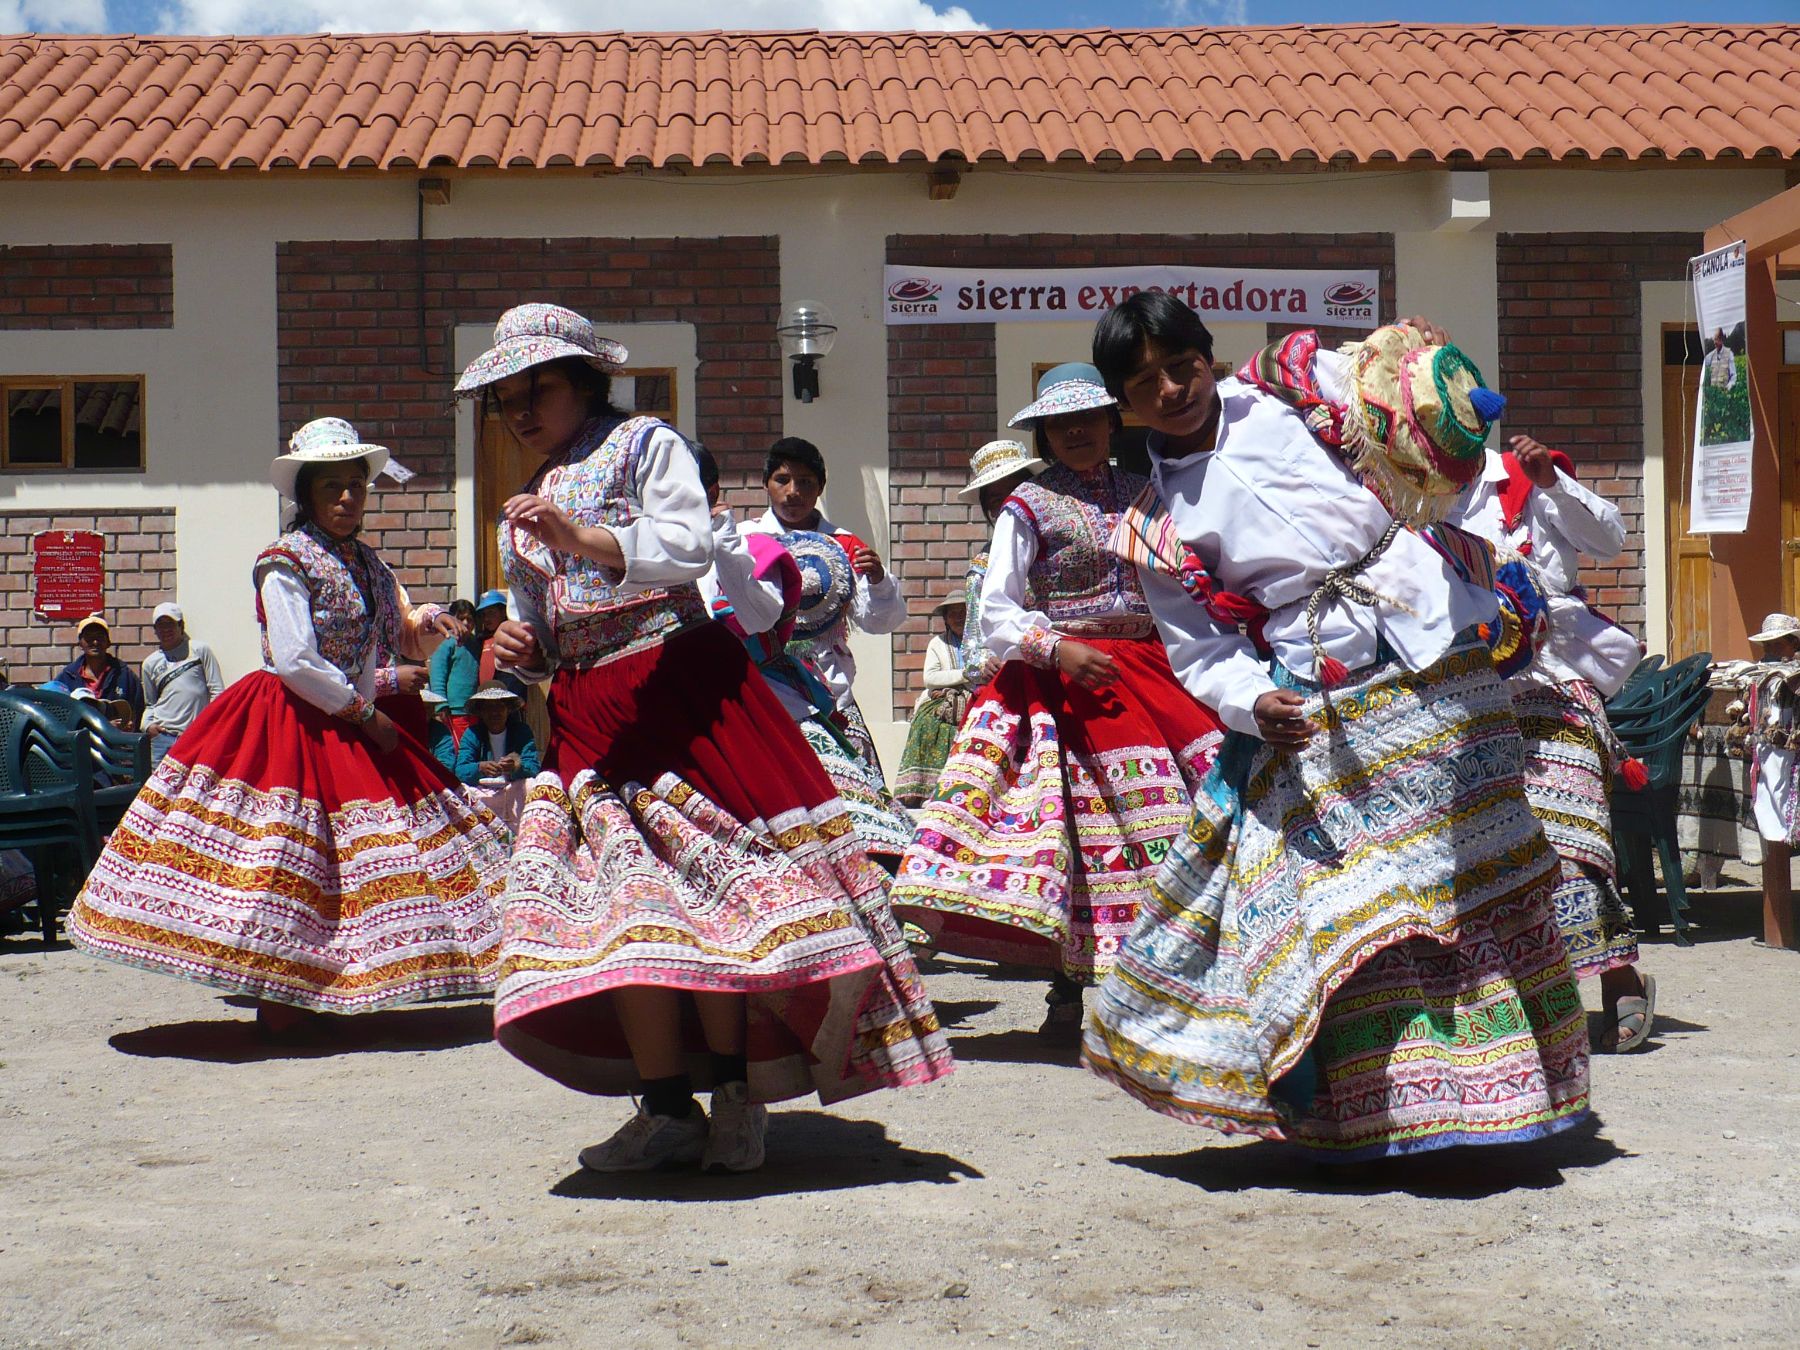 A ritmo del wititi el valle del Colca recibirá a la Antorcha Panamericana. Foto: ANDINA/archivo.